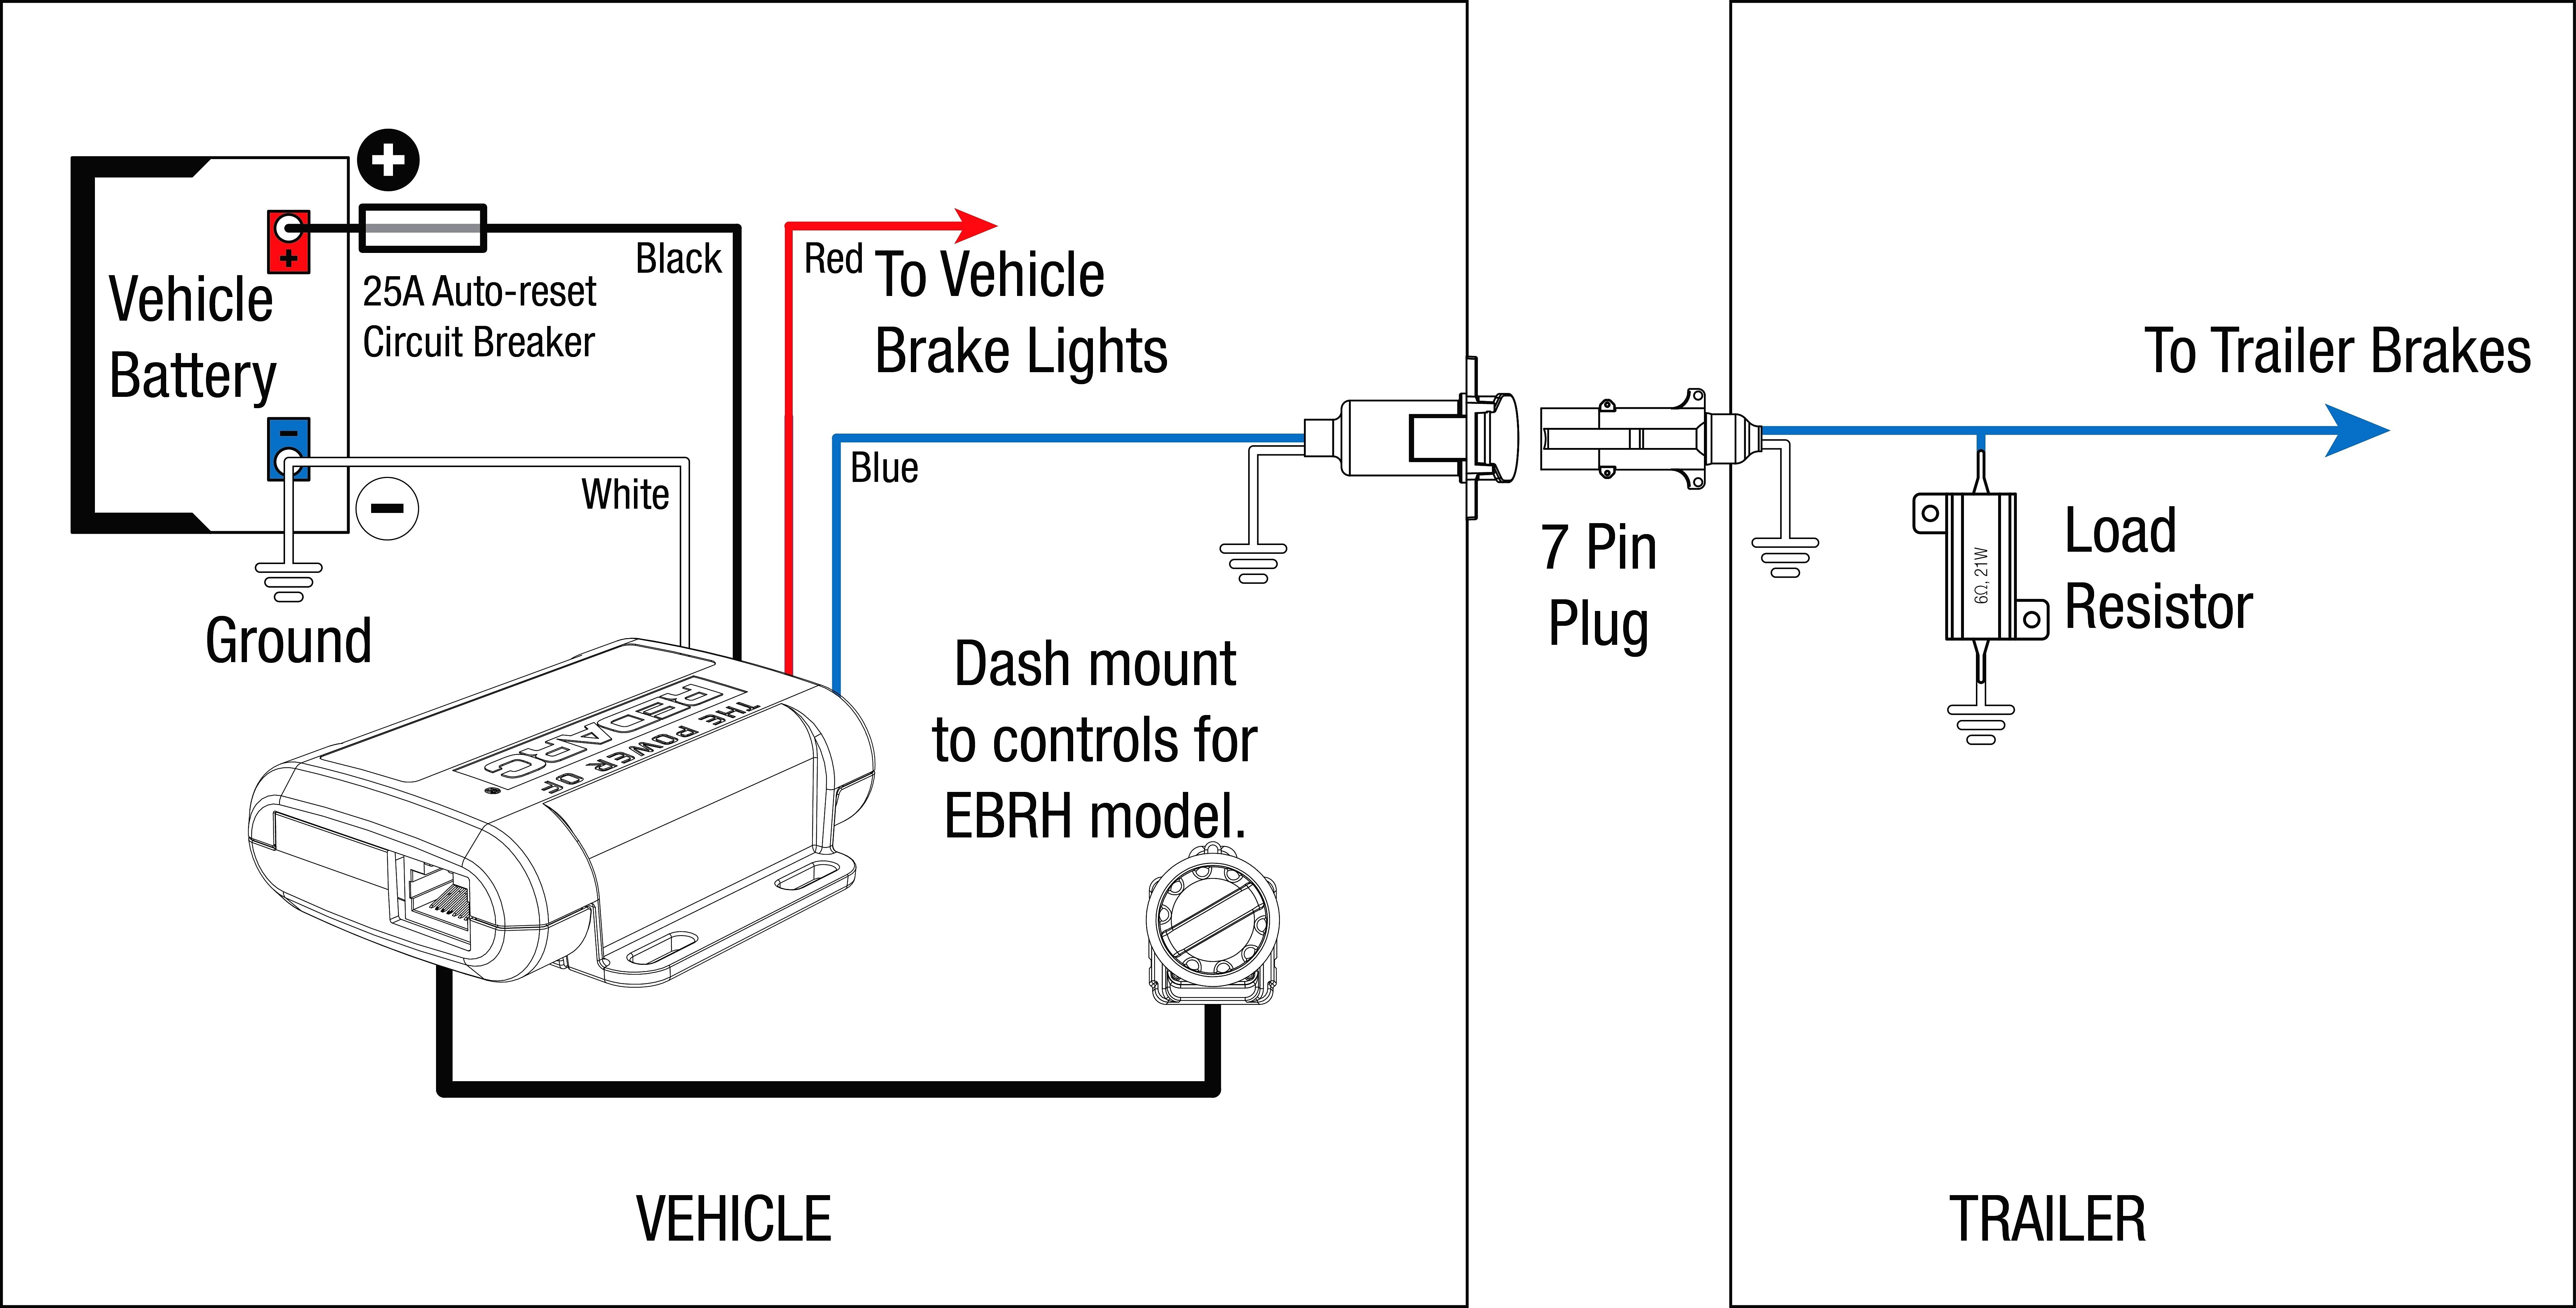 Electric Trailer Brake Controller Wiring Diagram Book Of Dodge - Dodge Trailer Brake Controller Wiring Diagram